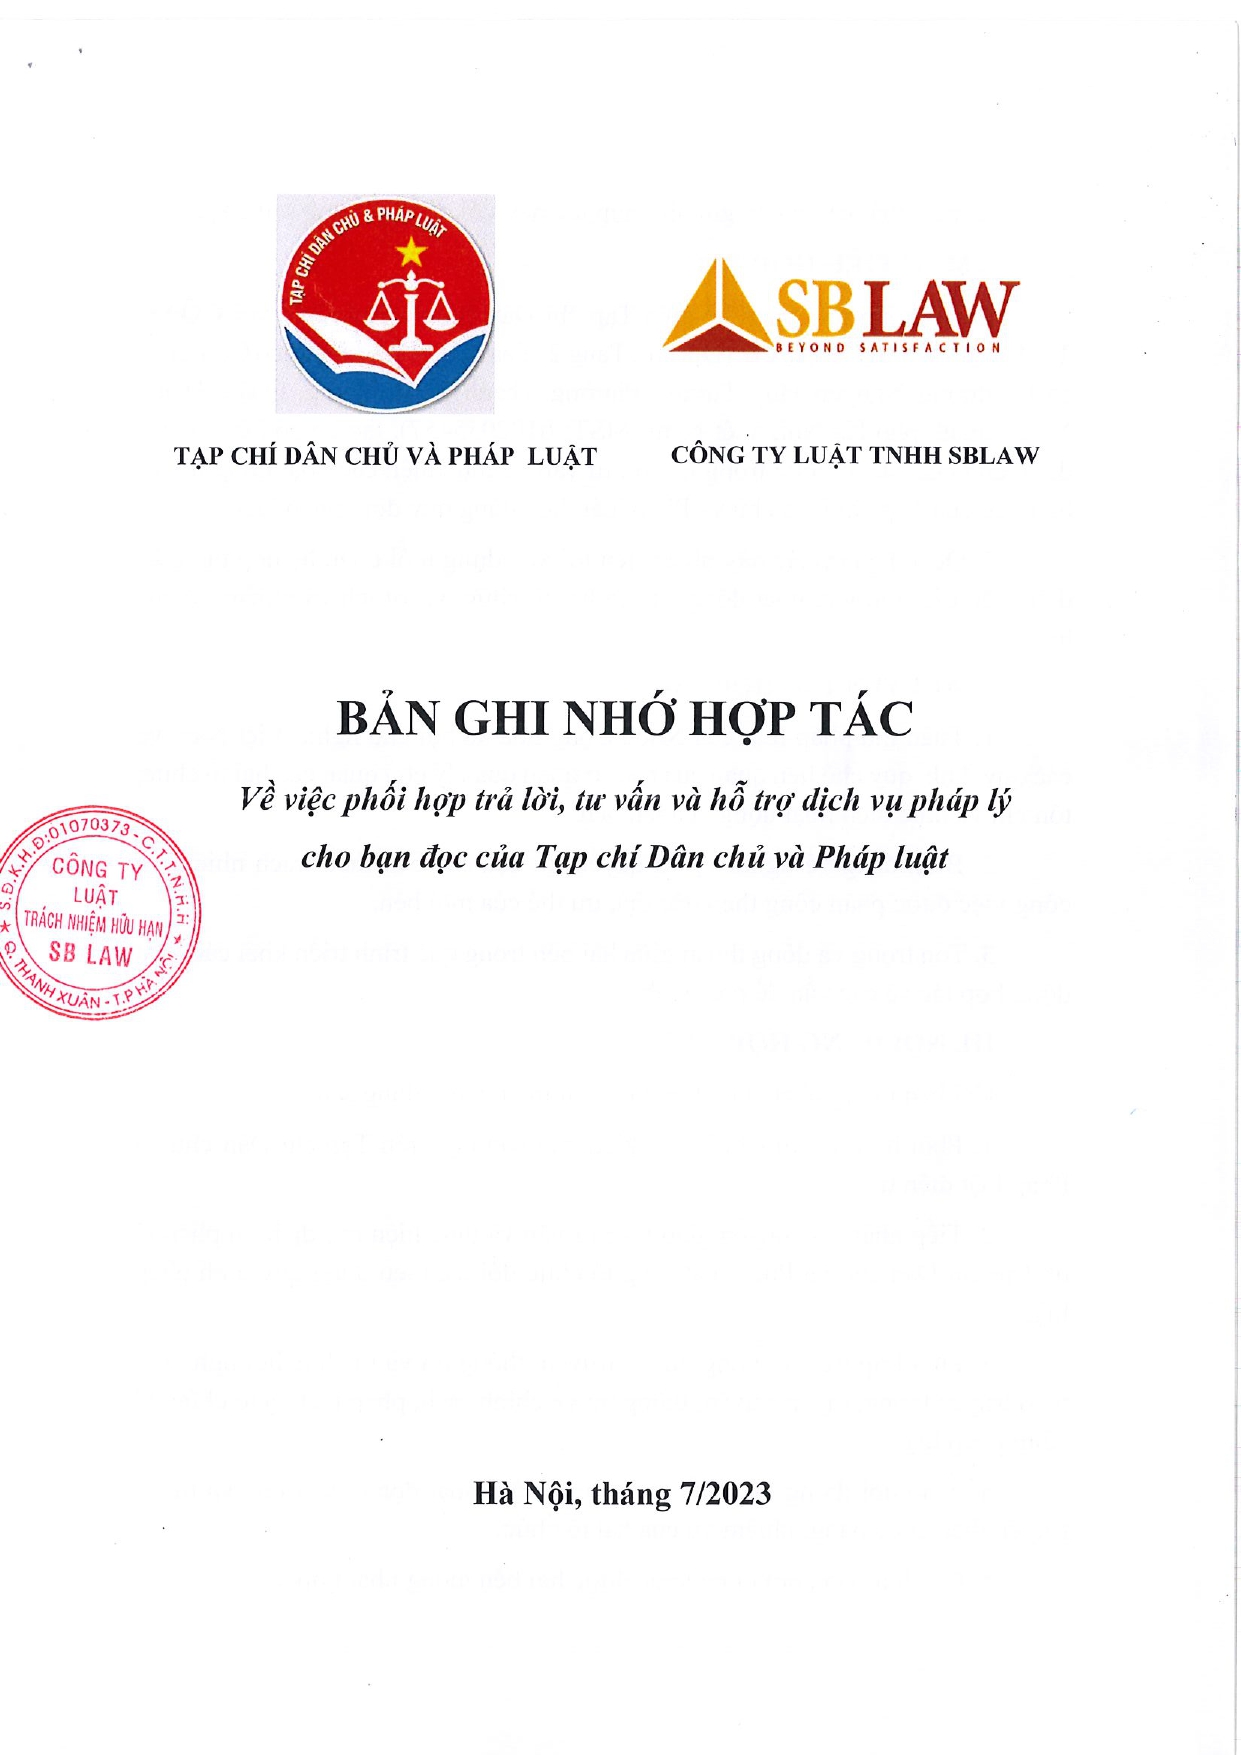 Scan_Bản ghi nhớ hợp tác SB LAW & Tạp chí Dân Chủ_page-0001